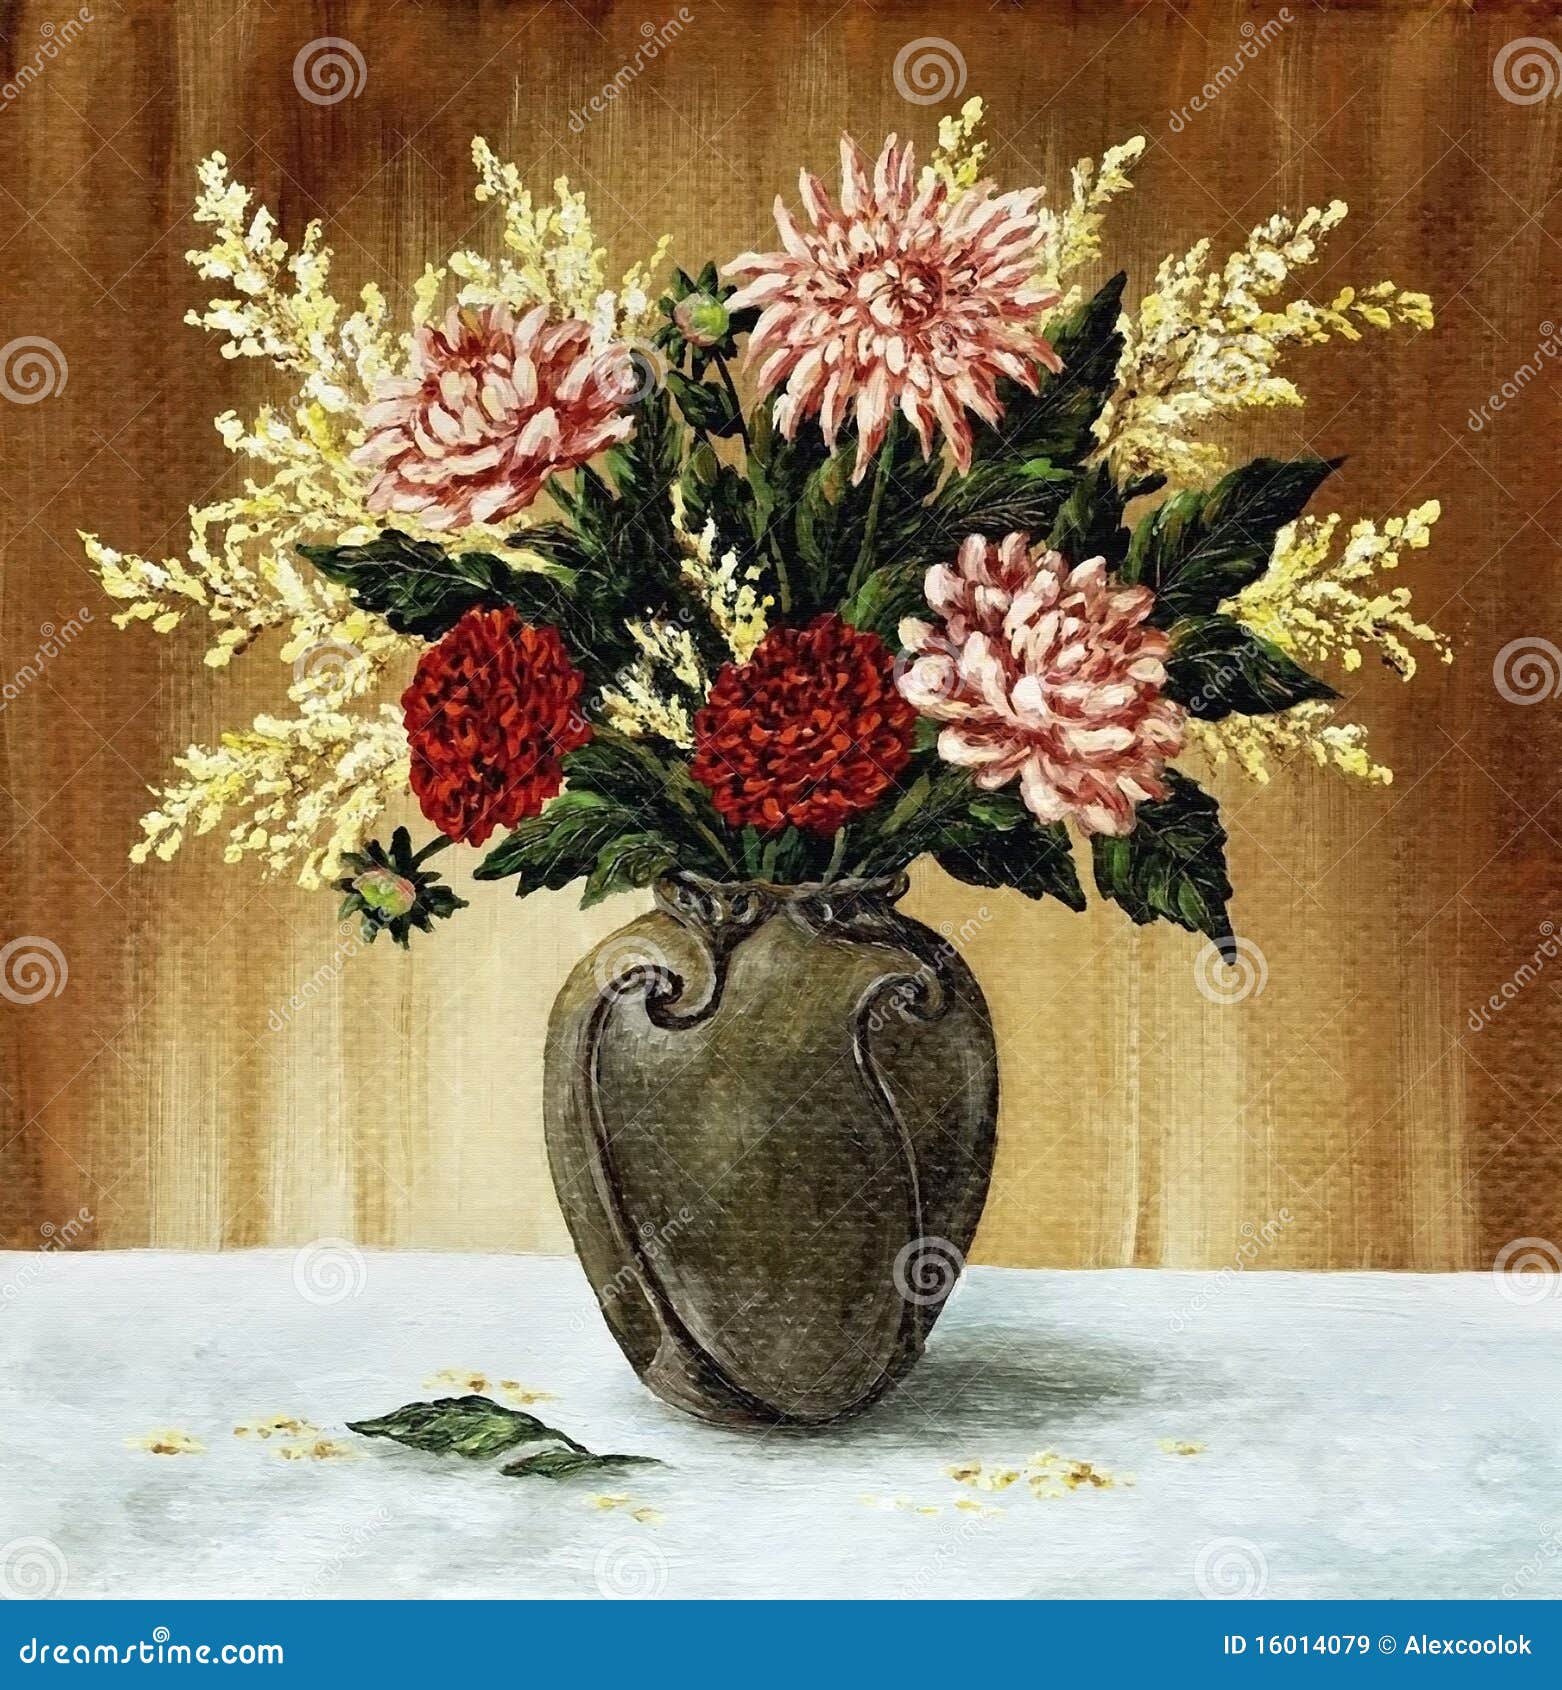 dahlias in a ceramic vase